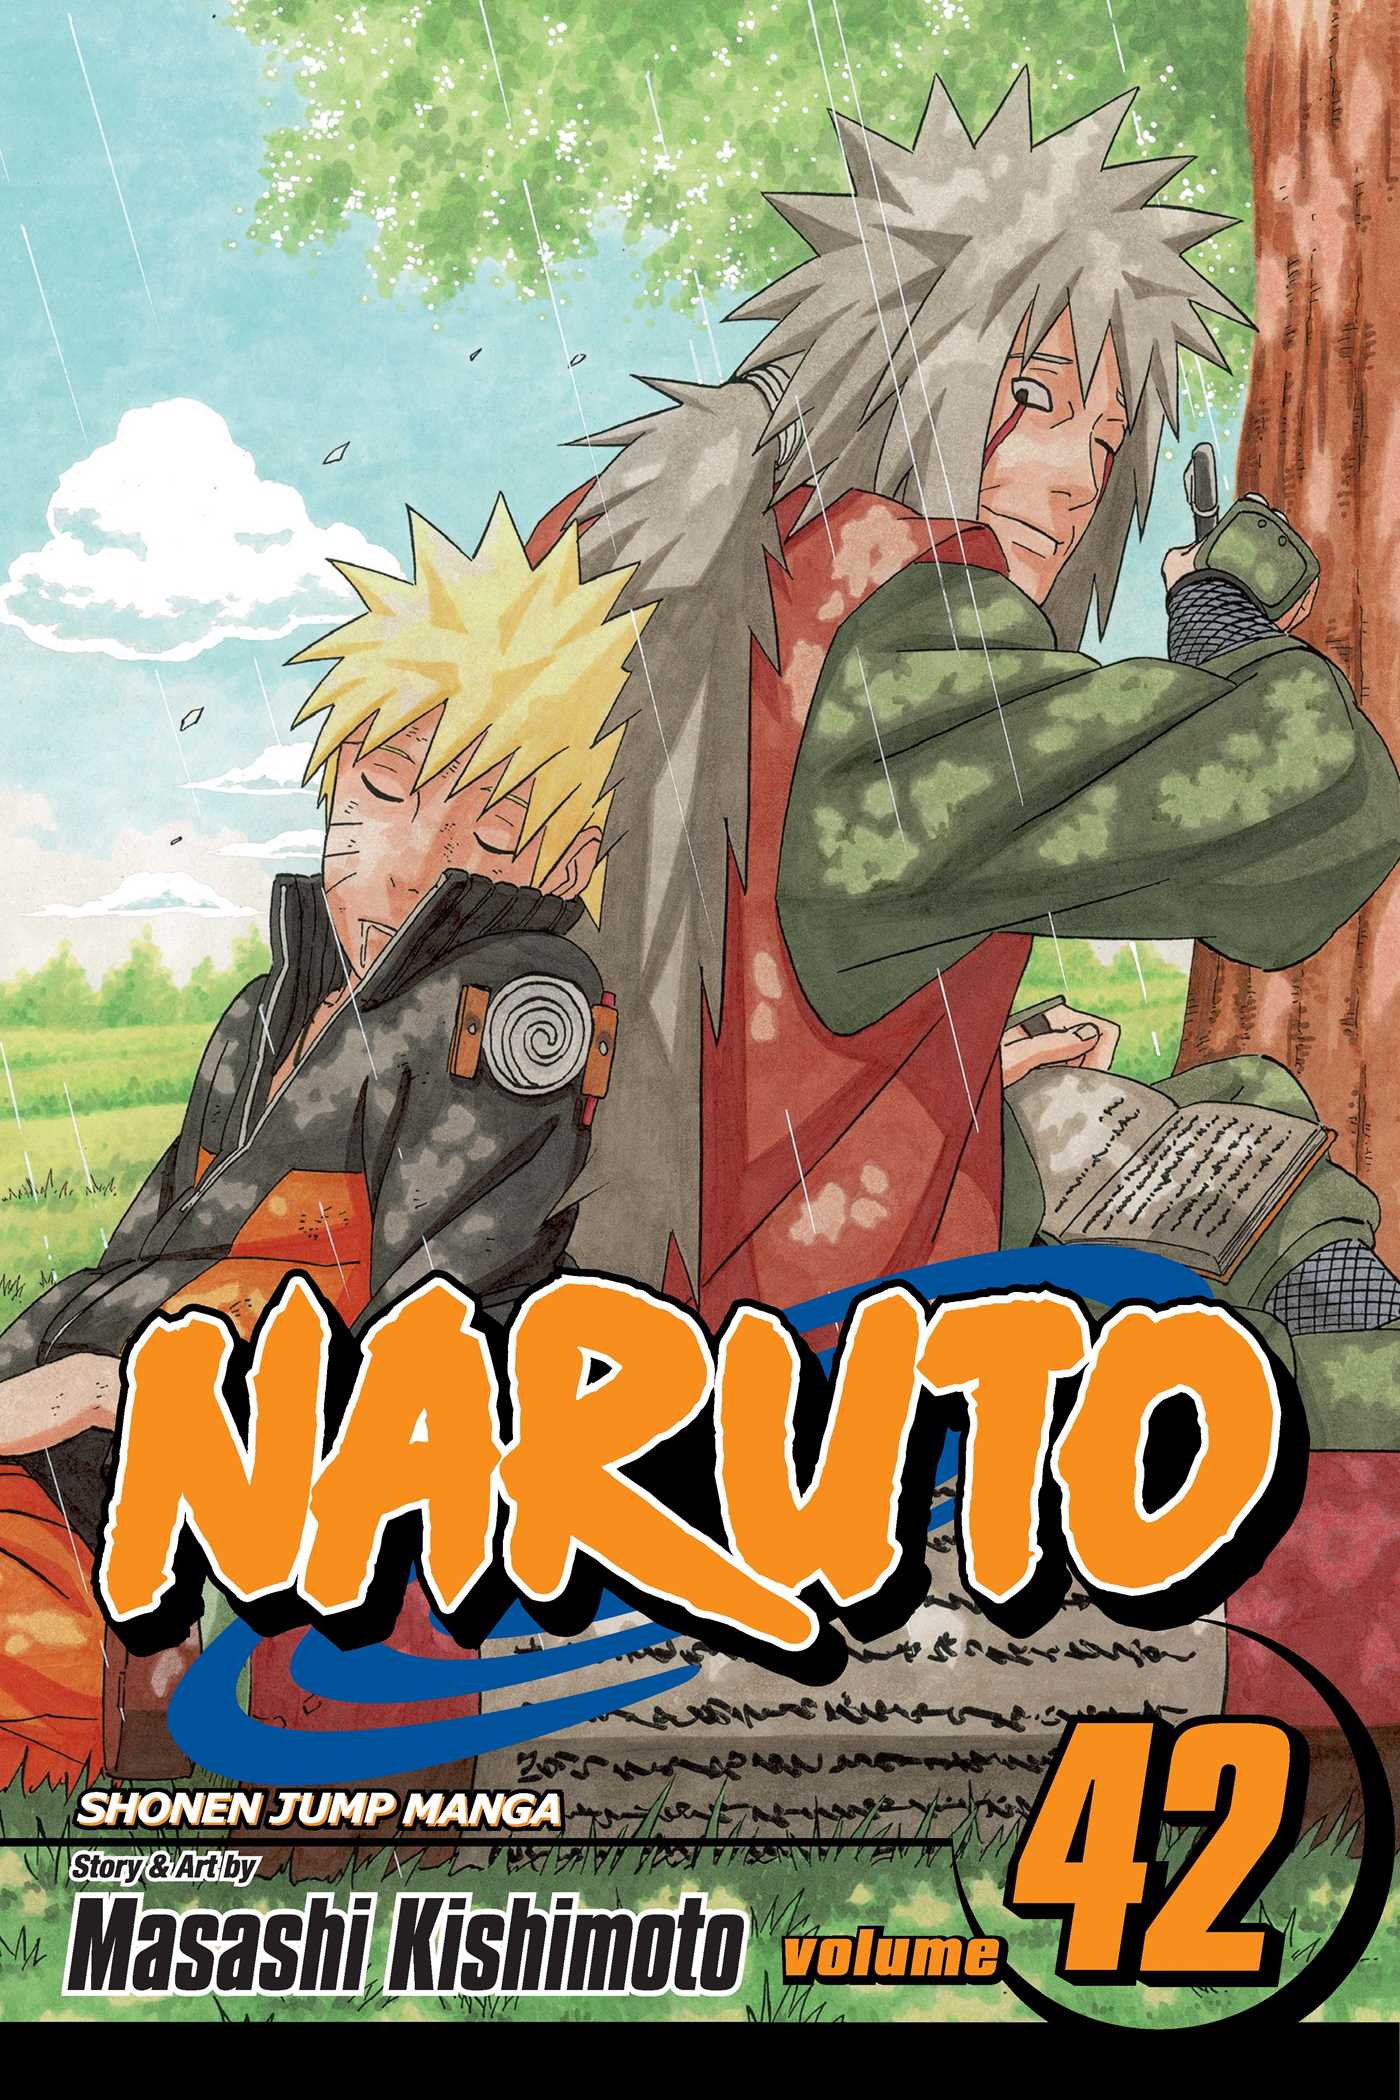 Naruto Vol. 42 | Kishimoto, Masashi (Auteur)